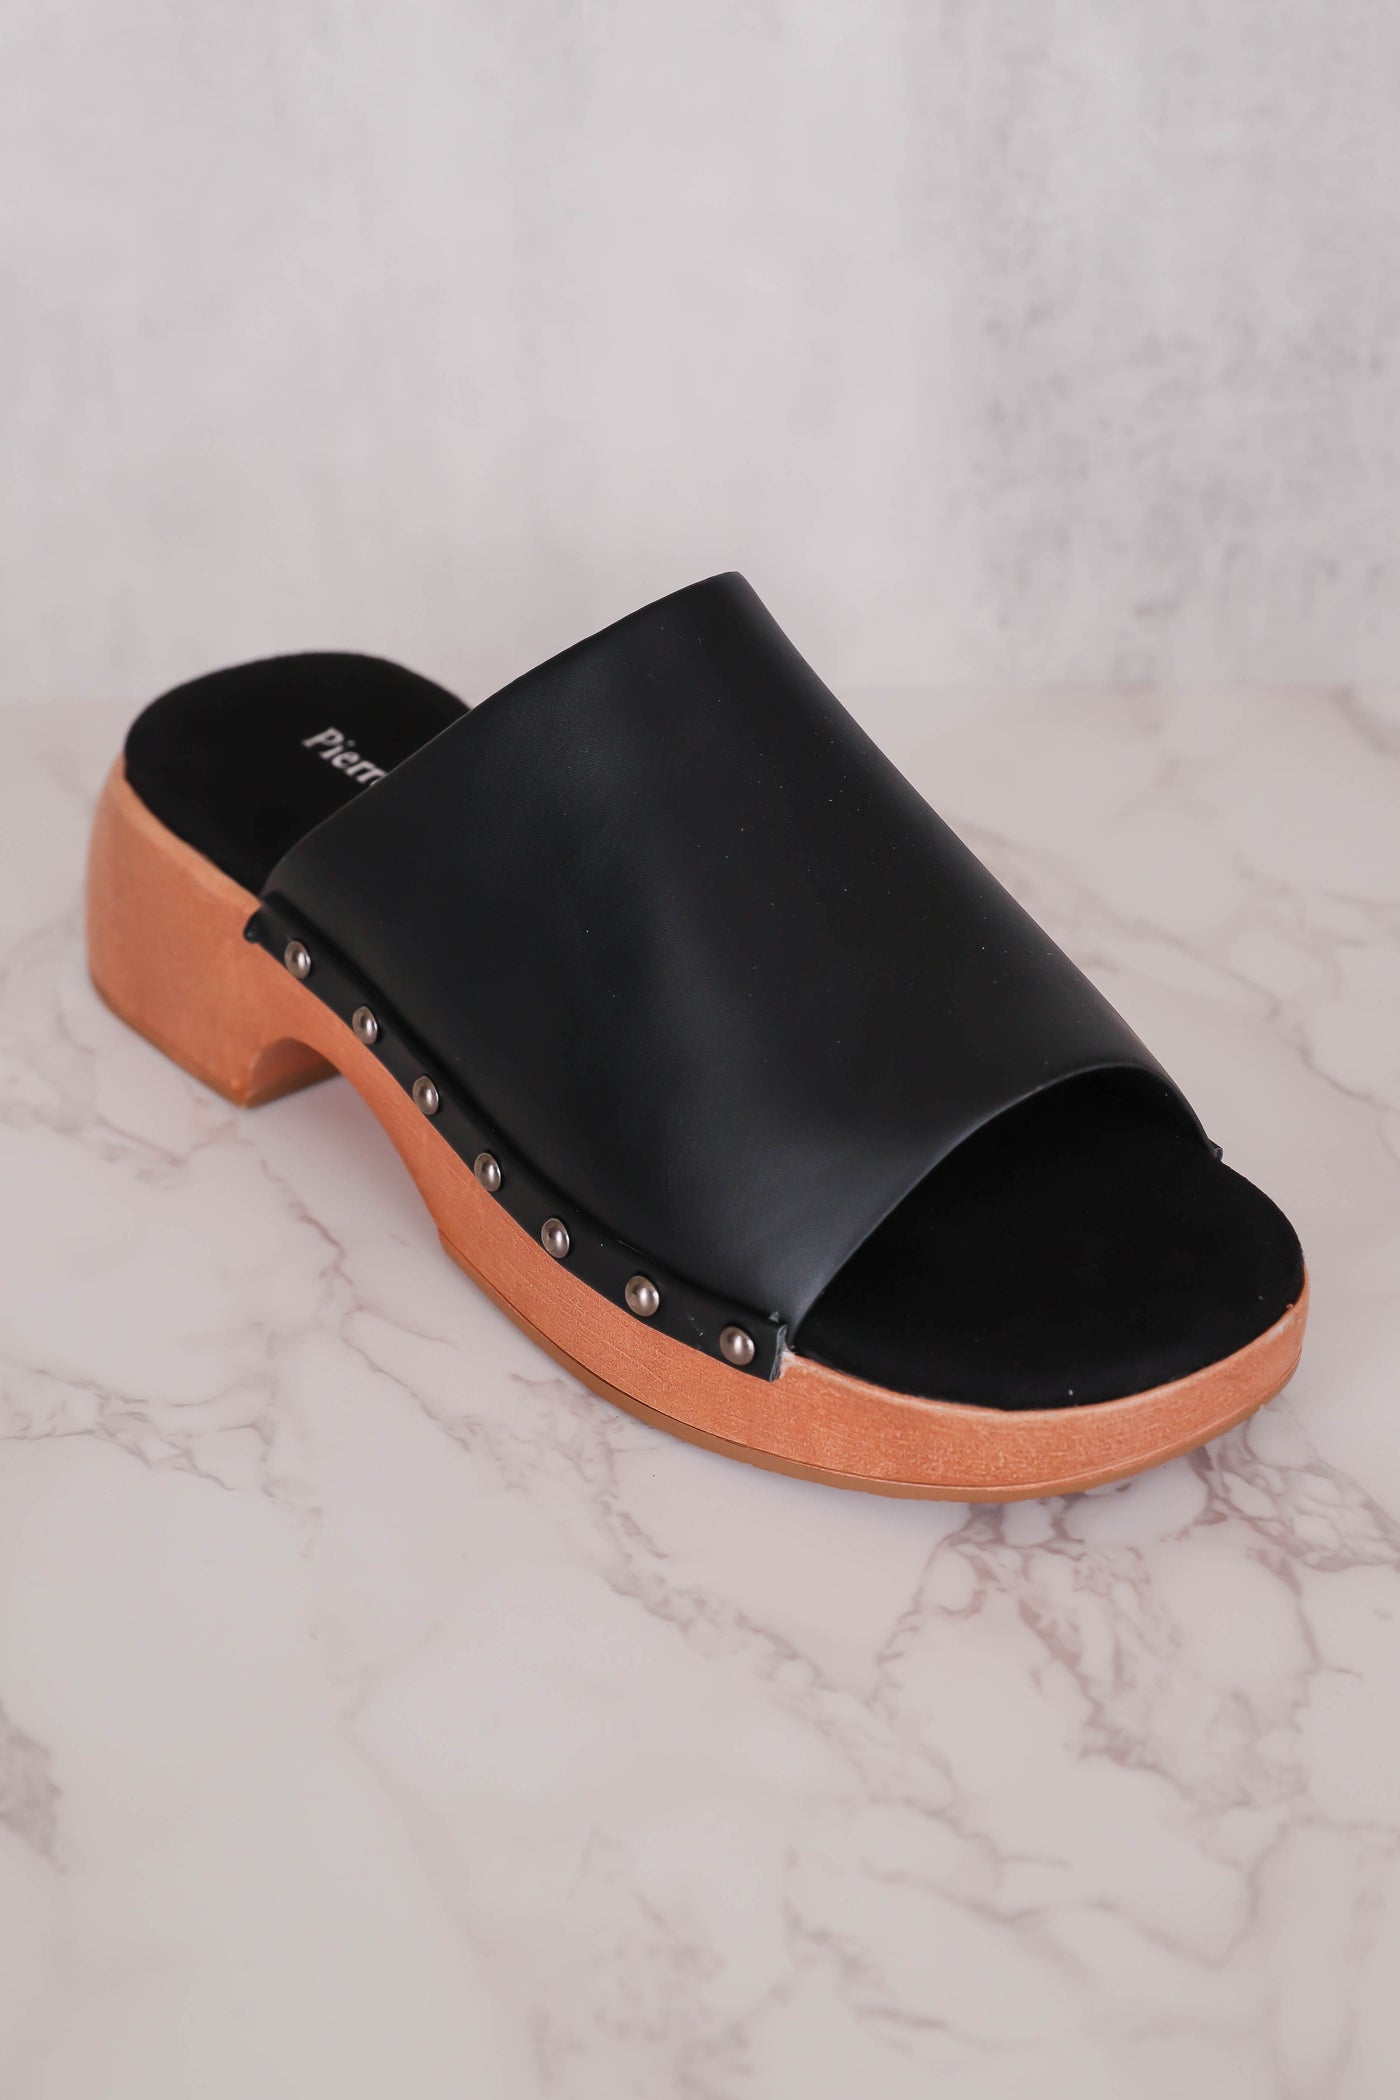 Women's Black Mules- Trendy Mule Sandals- Pierre Dumas Black Clogs